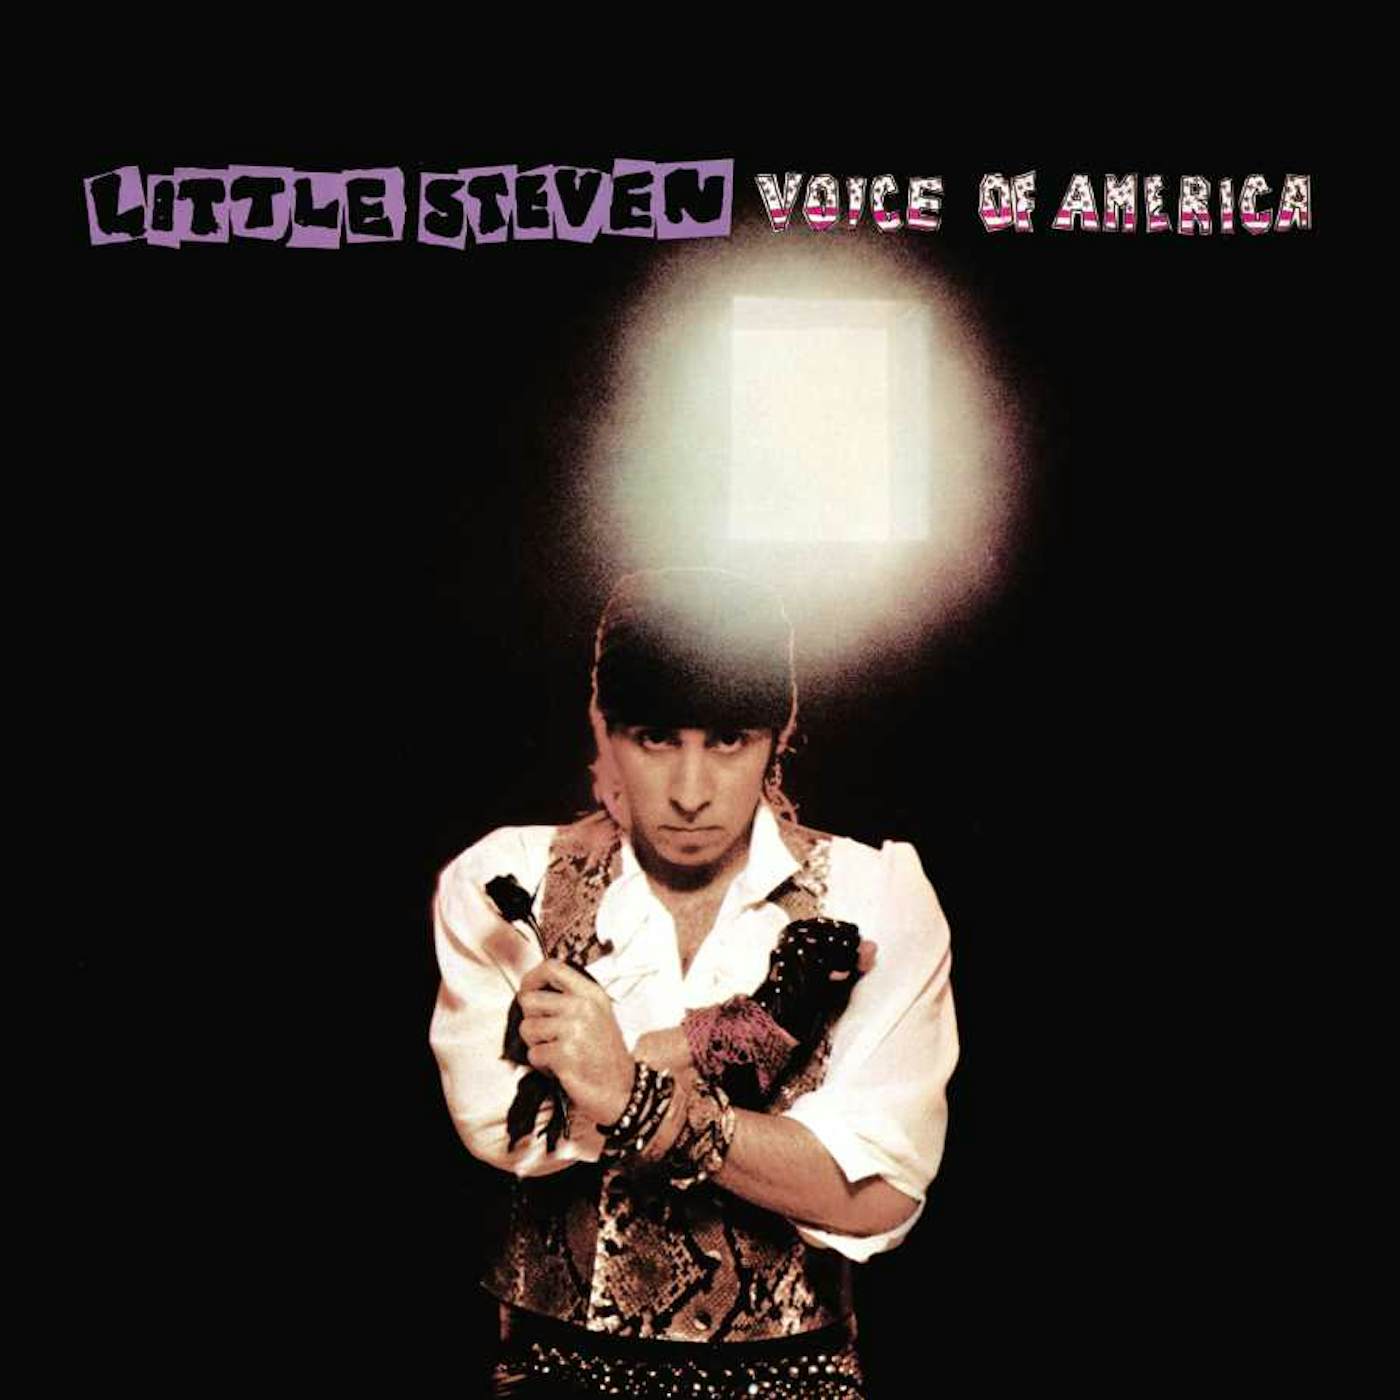 Little Steven VOICE OF AMERICA (CD/DVD) CD